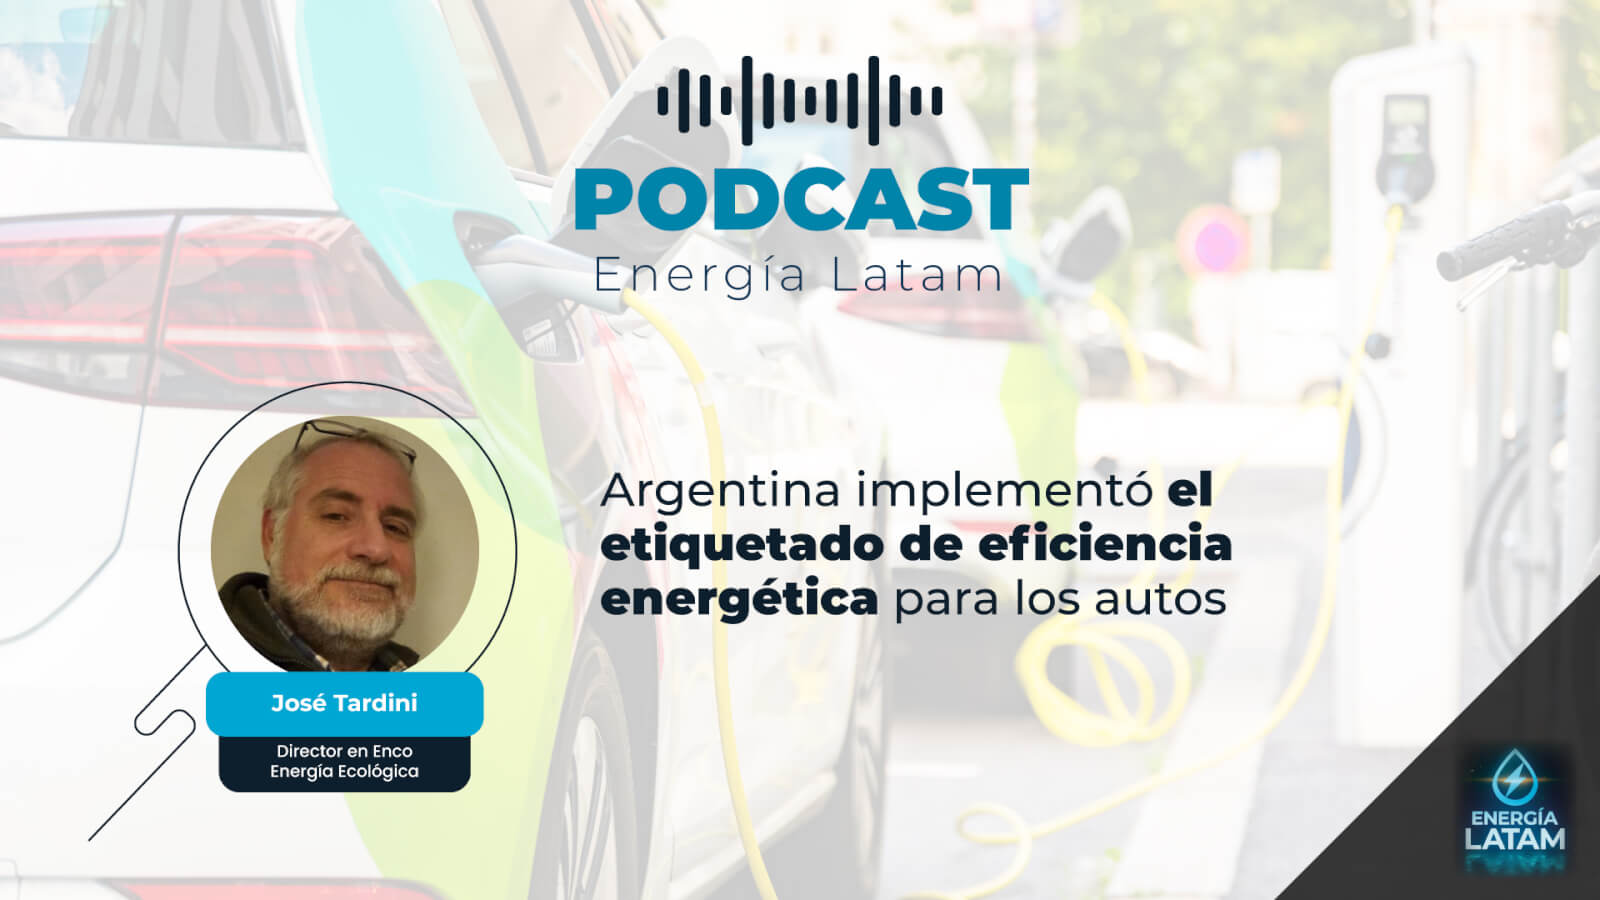 Argentina implementó el etiquetado de eficiencia energética para los autos